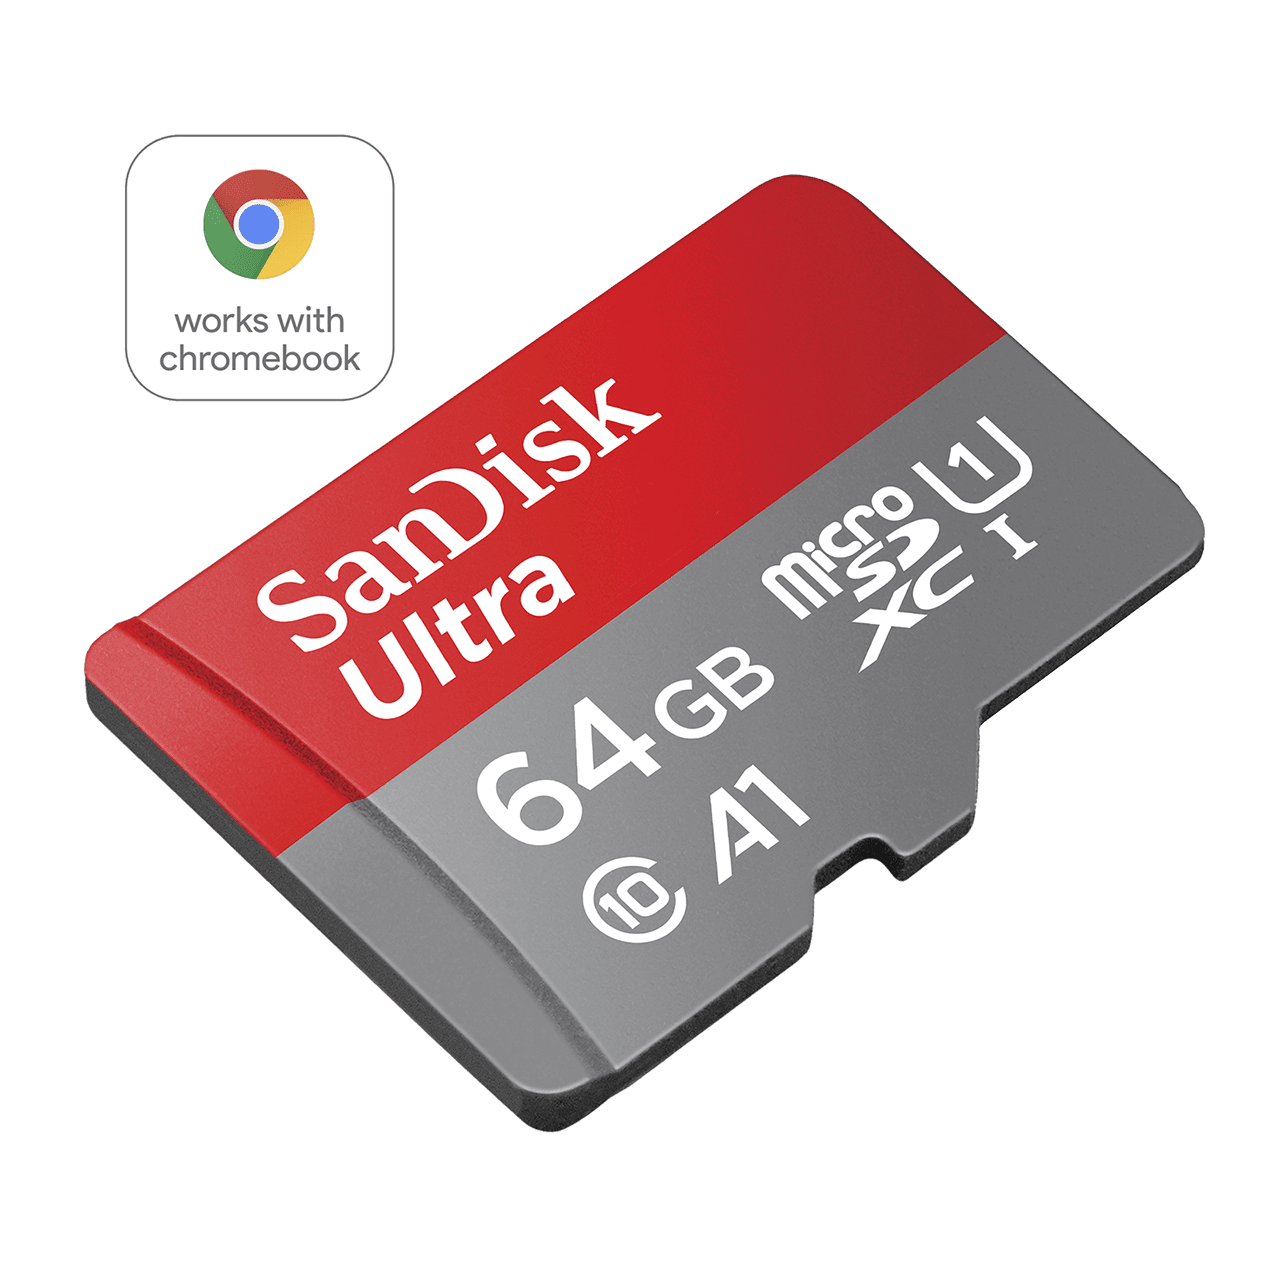 FAQ pour les cartes microSD., Assistance